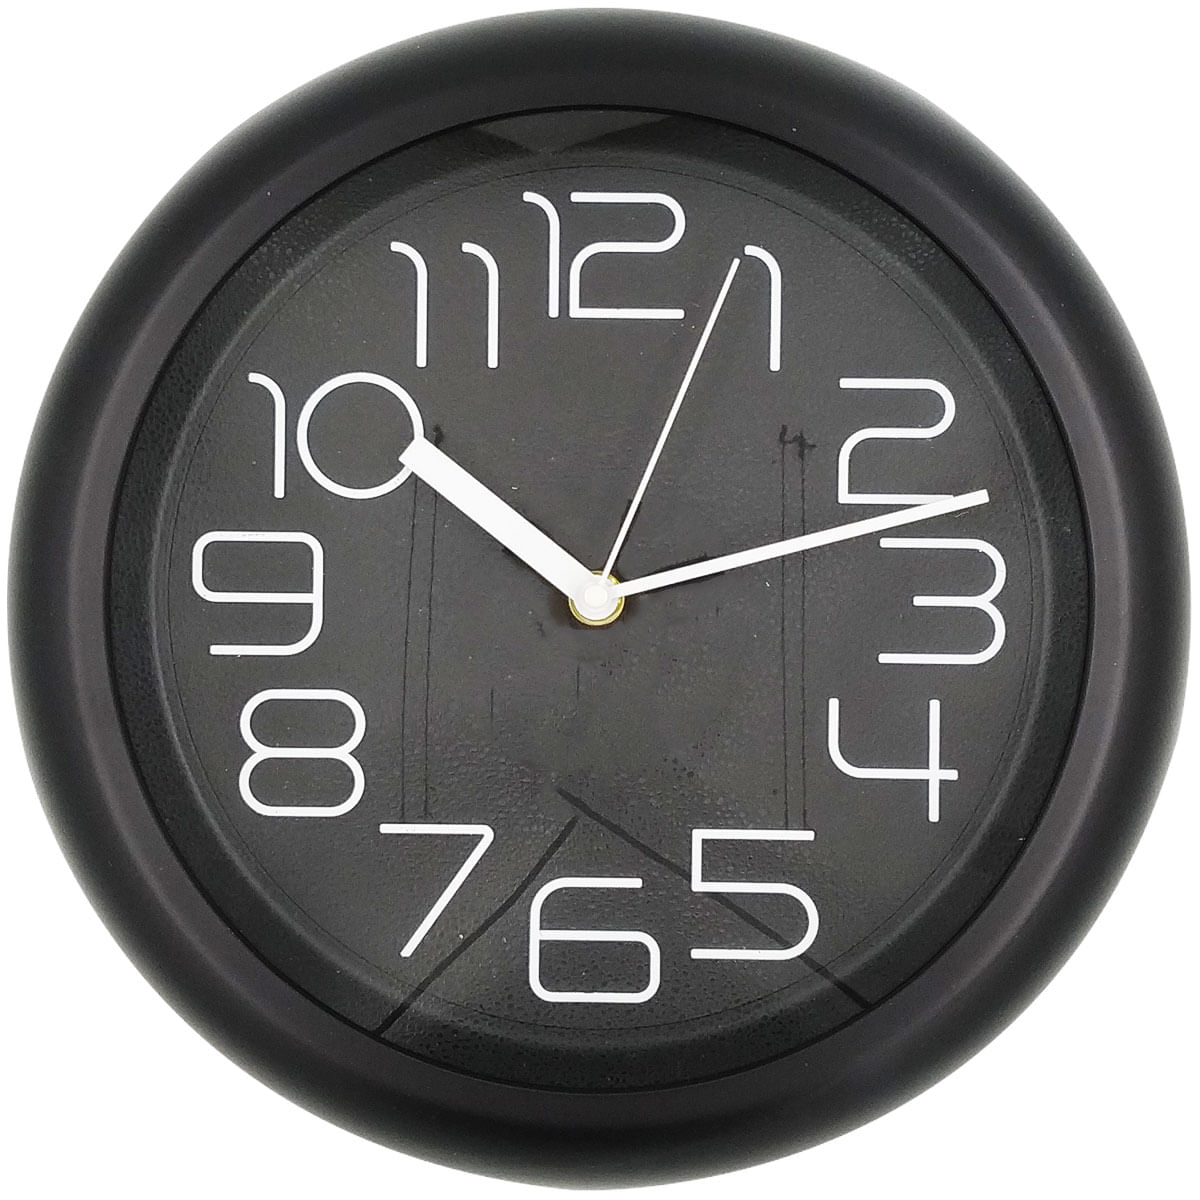 Relógio de Parede Redondo Home 30 cm YINS